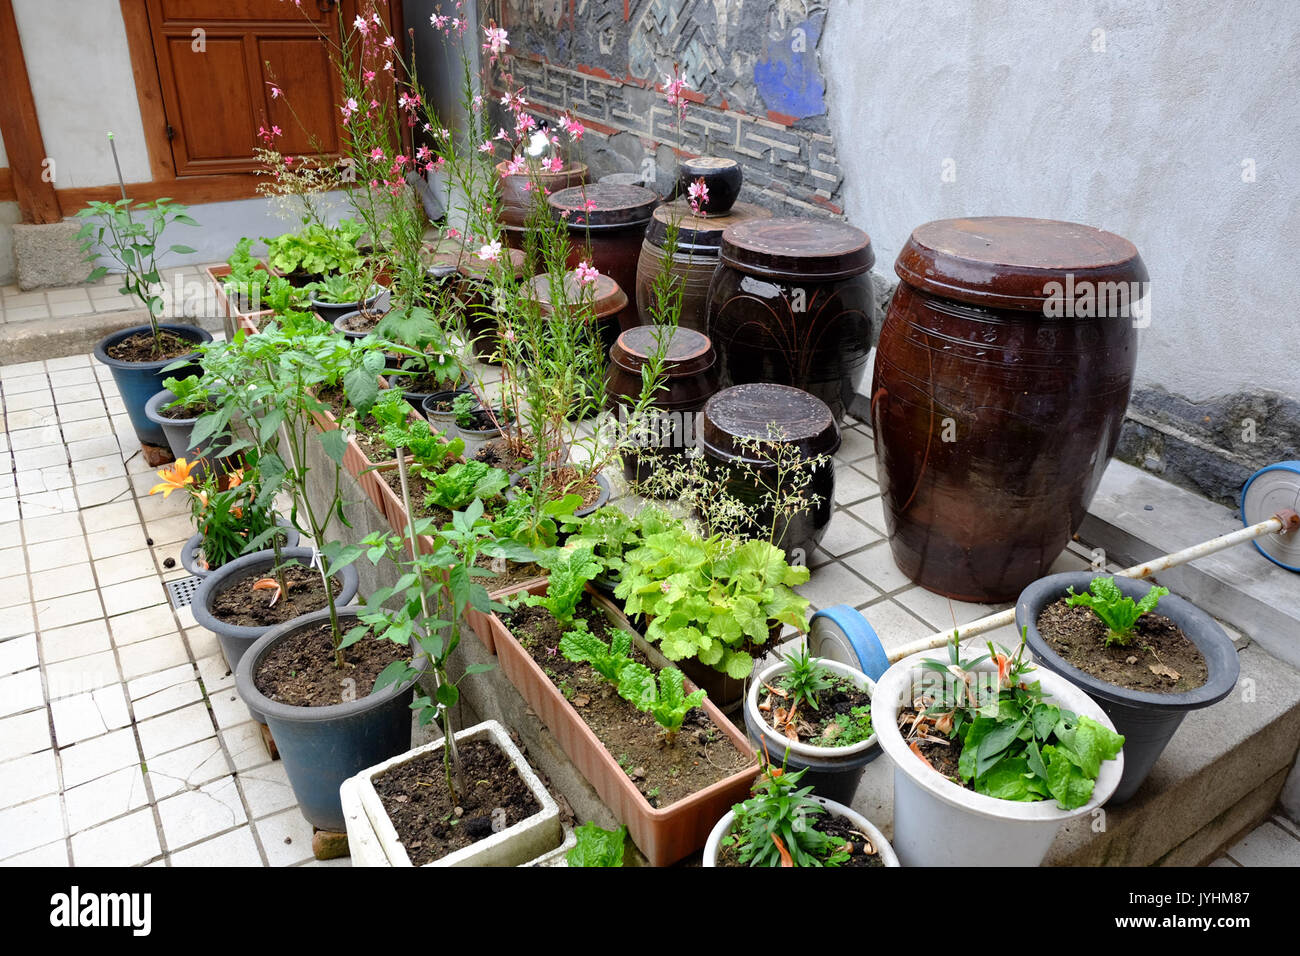 Un jardin dans la chambre de Lee Sang beom Banque D'Images